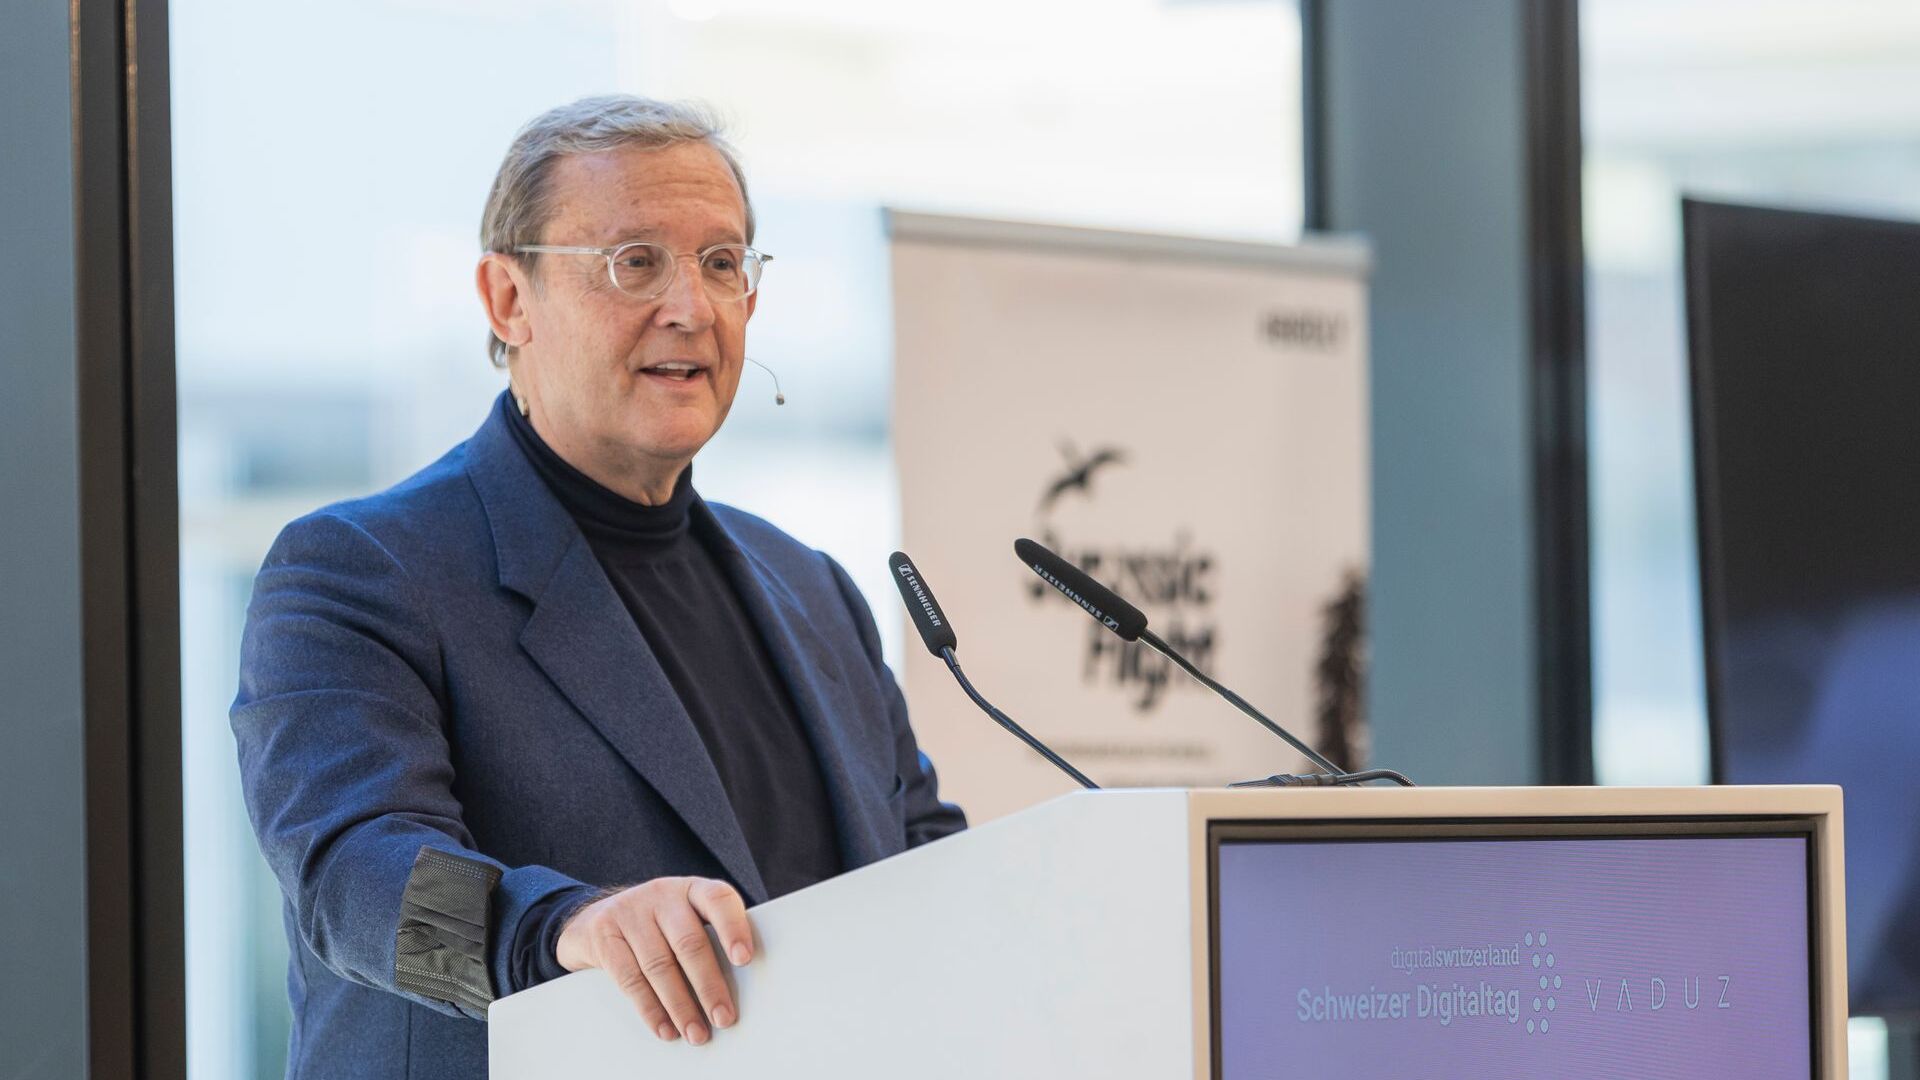 Le "Digitaltag Vaduz" a été accueilli par le Kunstmuseum de la capitale de la Principauté de Liechtenstein le samedi 6 novembre 2021 : le discours de Fritz Kaiser, Président et propriétaire de Kaiser Partner